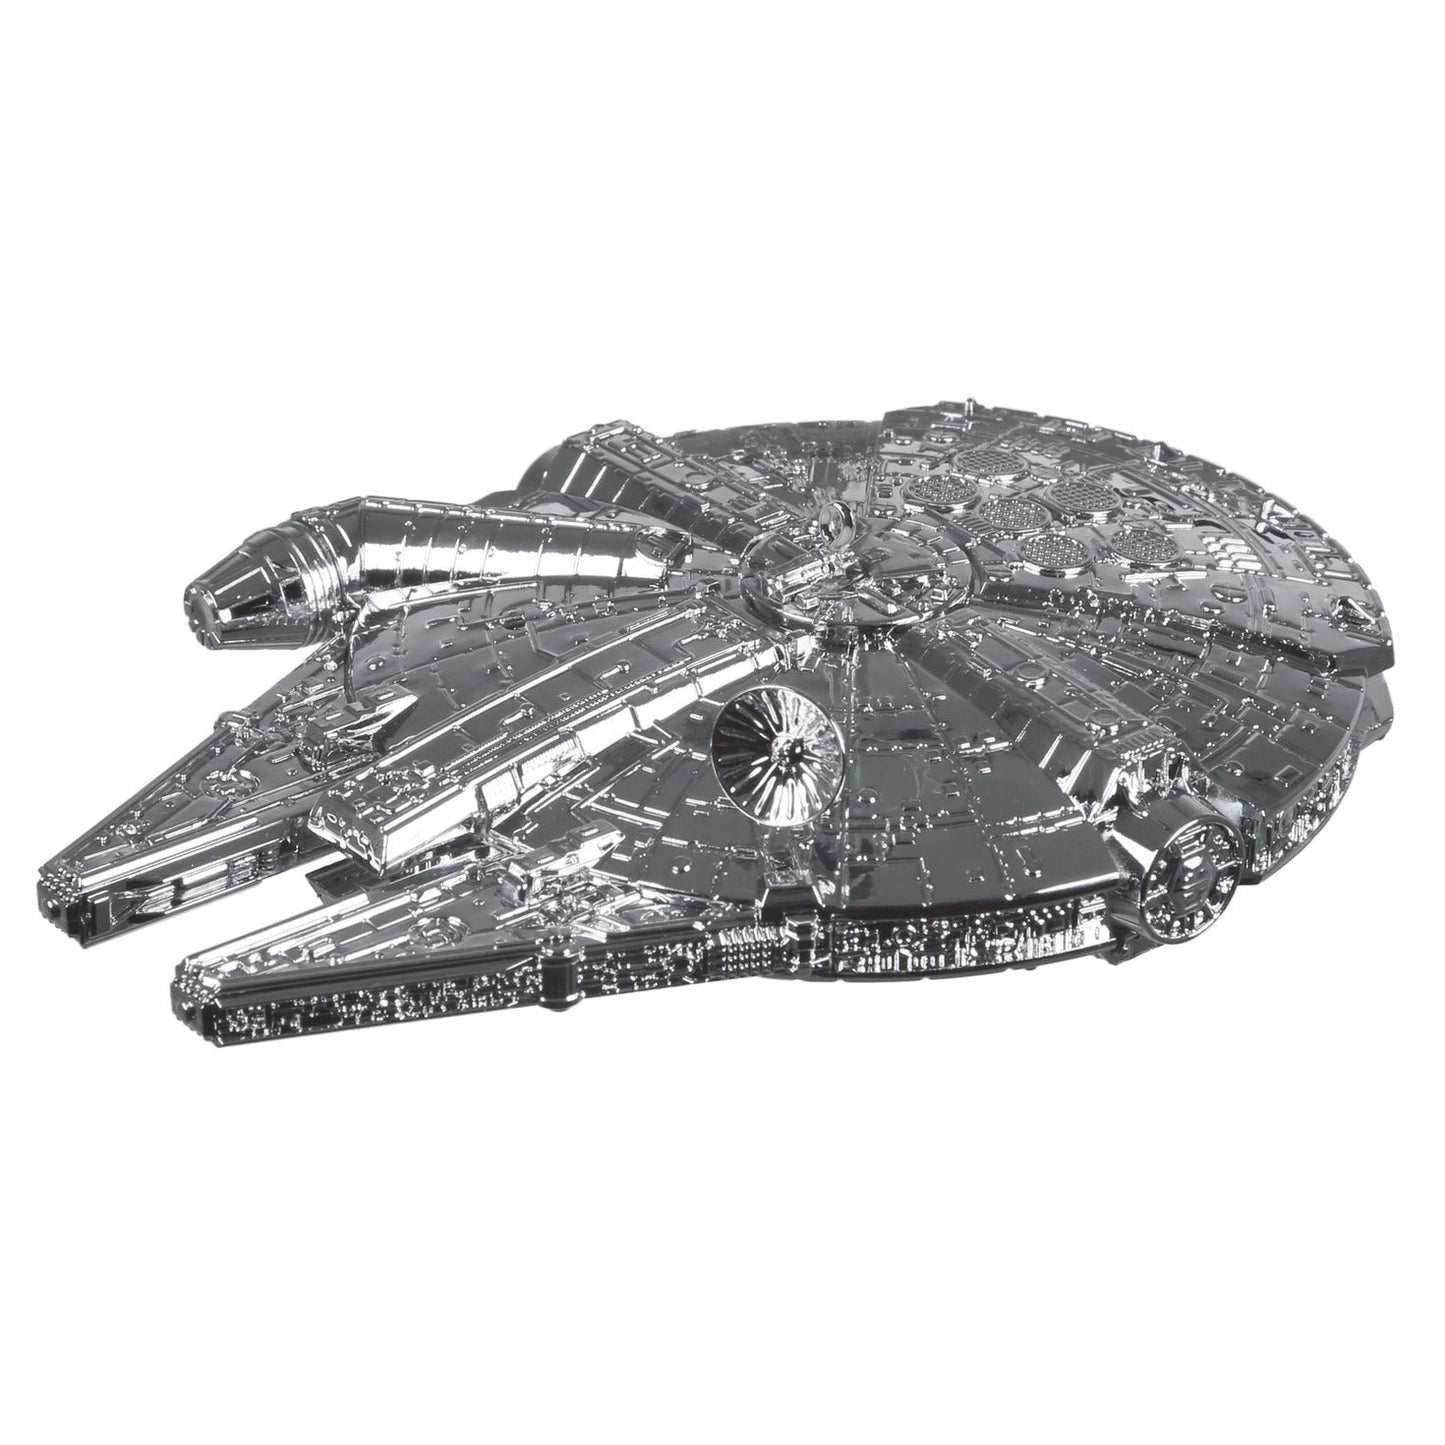 Star Wars Millennium Falcon, Metal, 2021 Keepsake Ornament